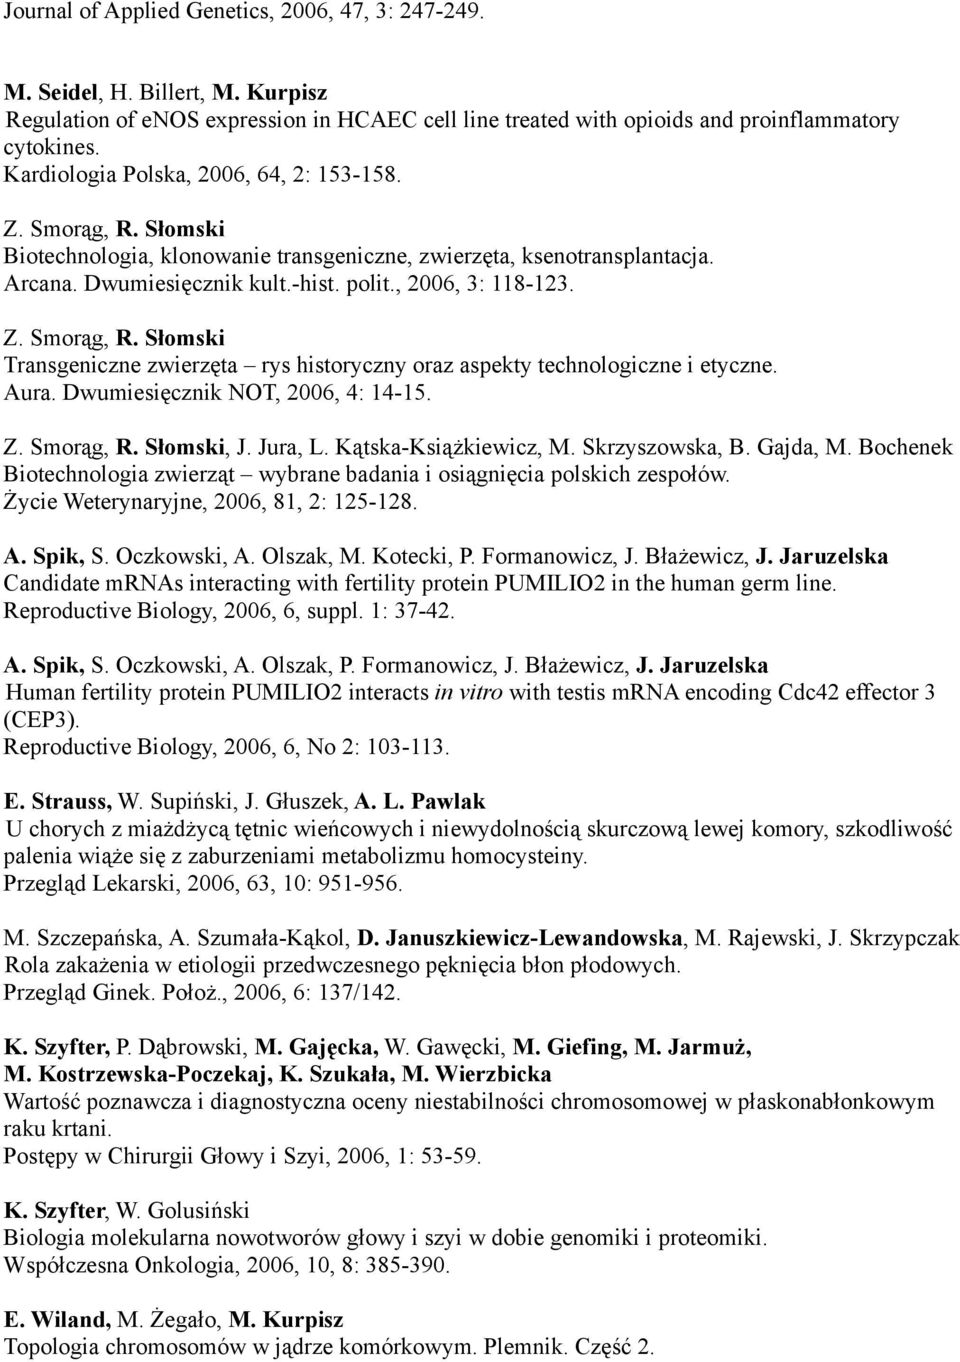 Transgeniczne zwierzęta rys historyczny oraz aspekty technologiczne i etyczne. Aura. Dwumiesięcznik NOT, 2006, 4: 14-15., J. Jura, L. Kątska-Książkiewicz, M. Skrzyszowska, B. Gajda, M.